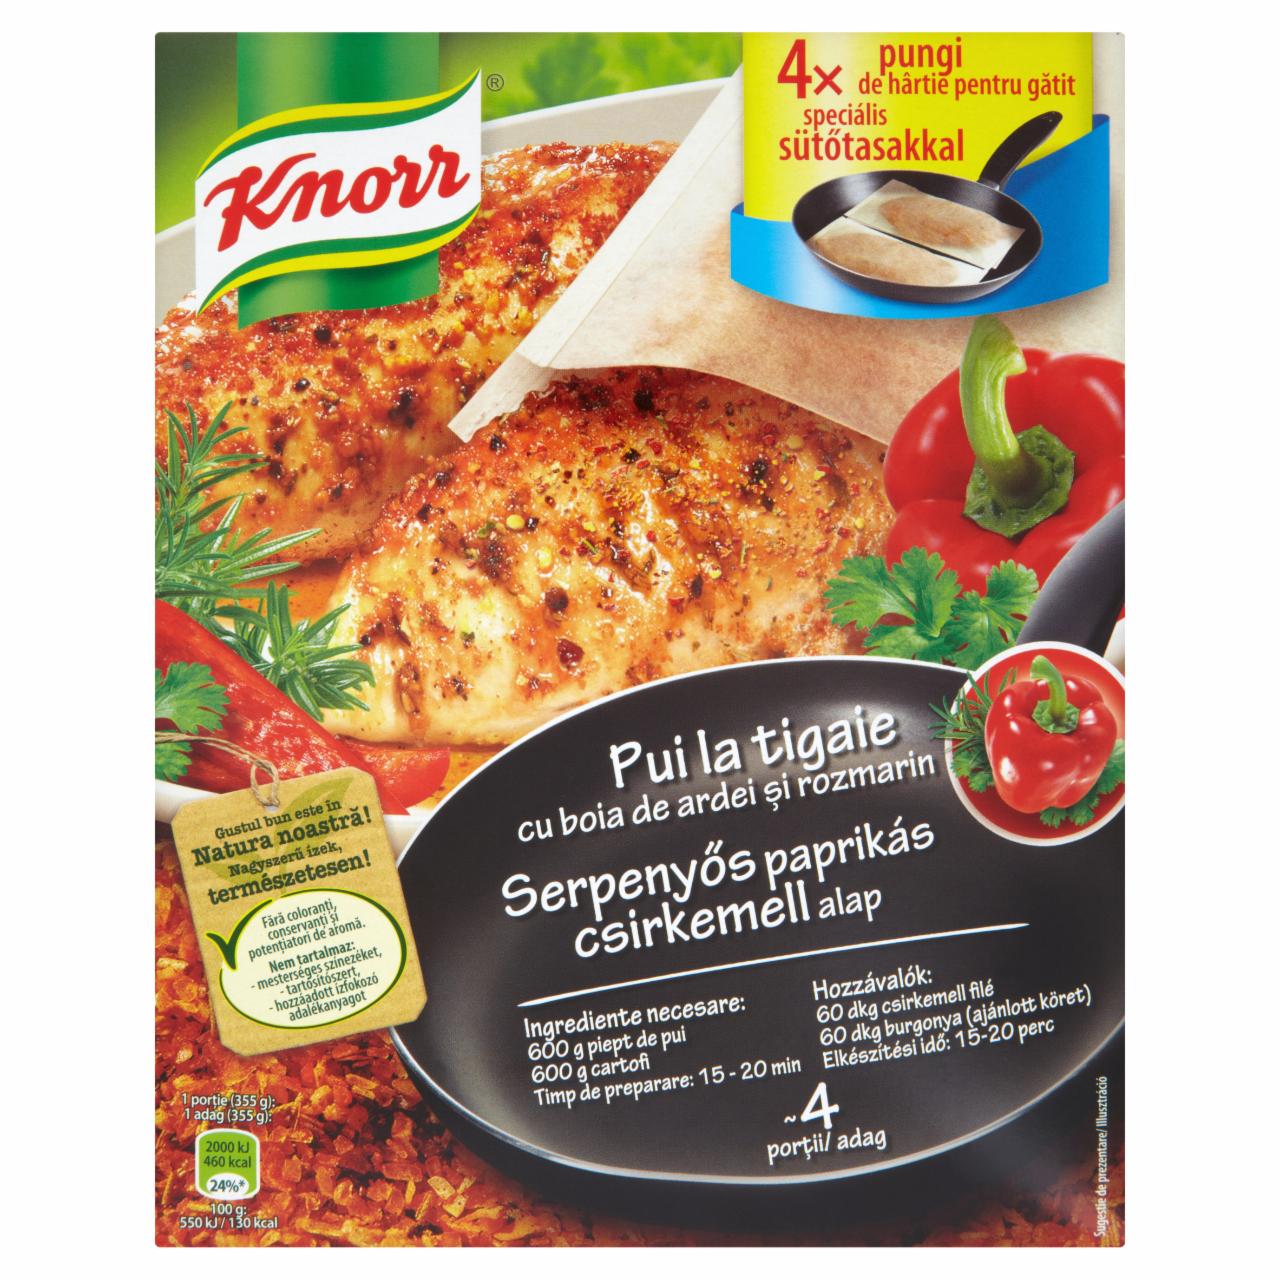 Képek - Knorr serpenyős paprikás csirkemell alap 16 g